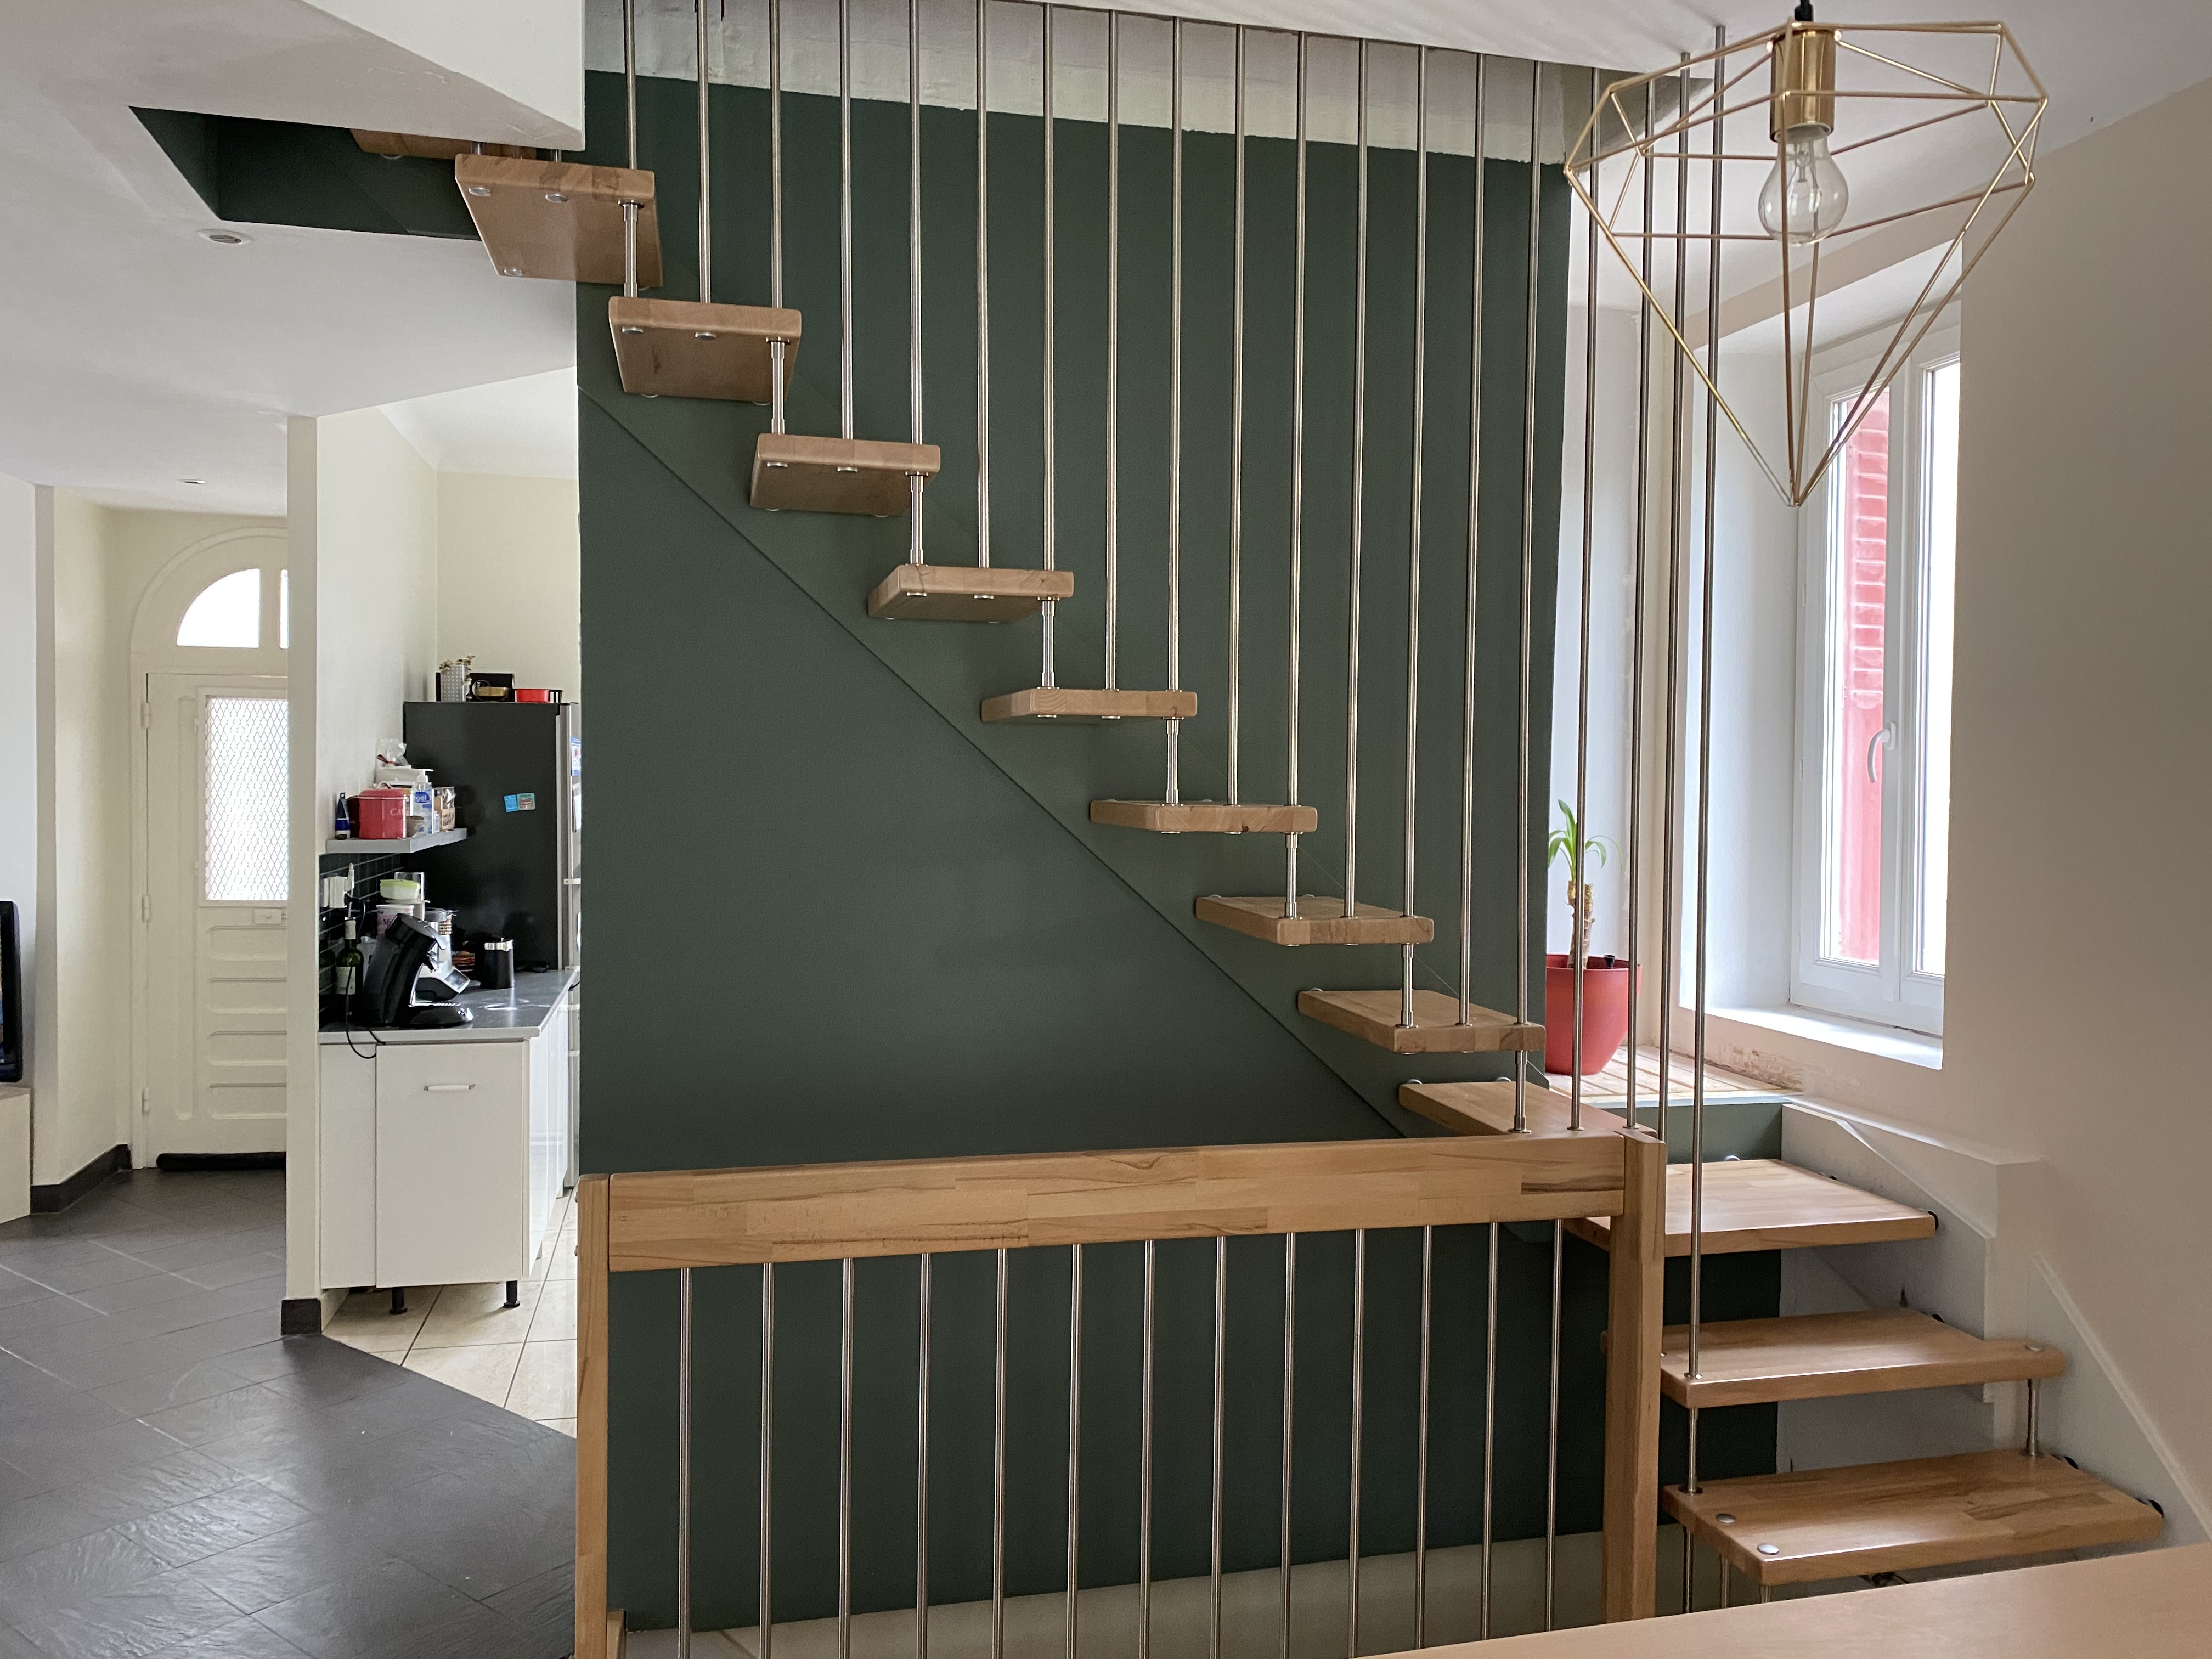 Escalier suspendu intérieur en bois avec rampe à balustres métalliques